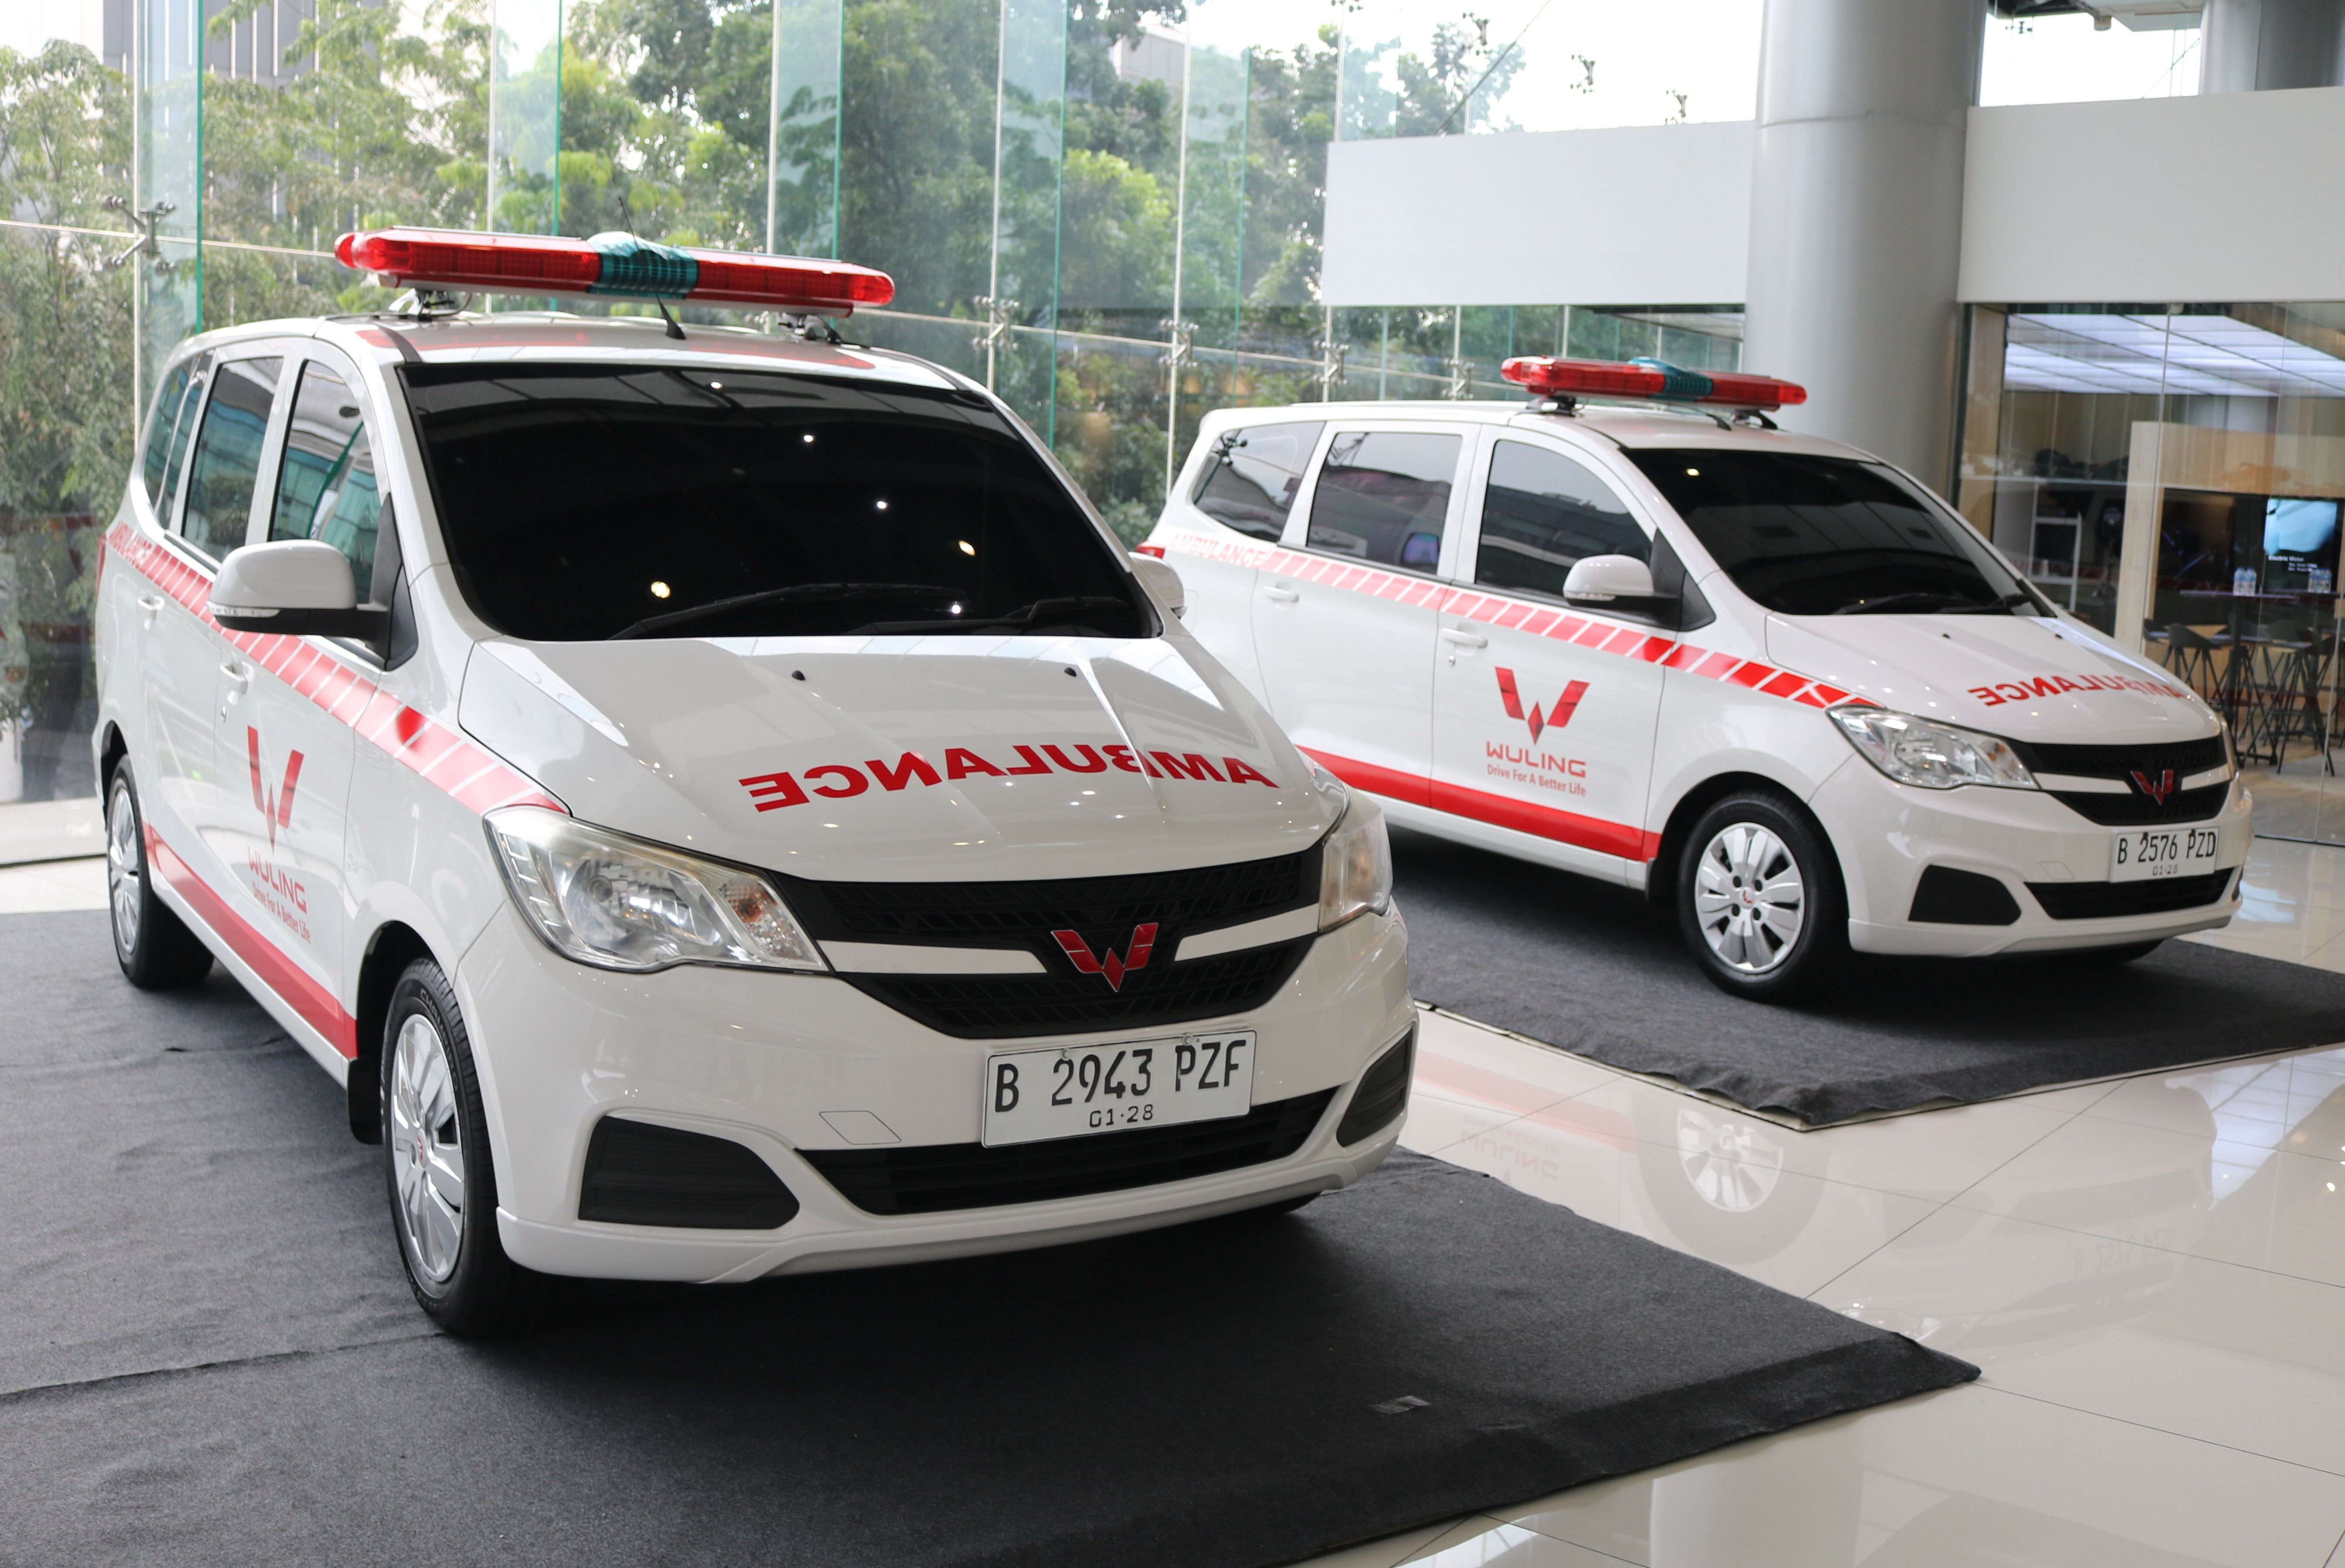 Wuling Motors melakukan serah terima 2 unit New Confero yang akan dioperasikan sebagai ambulans kepada Yayasan Bahtera Maju Indonesia di Wuling Center (Dok. Wuling Motors)